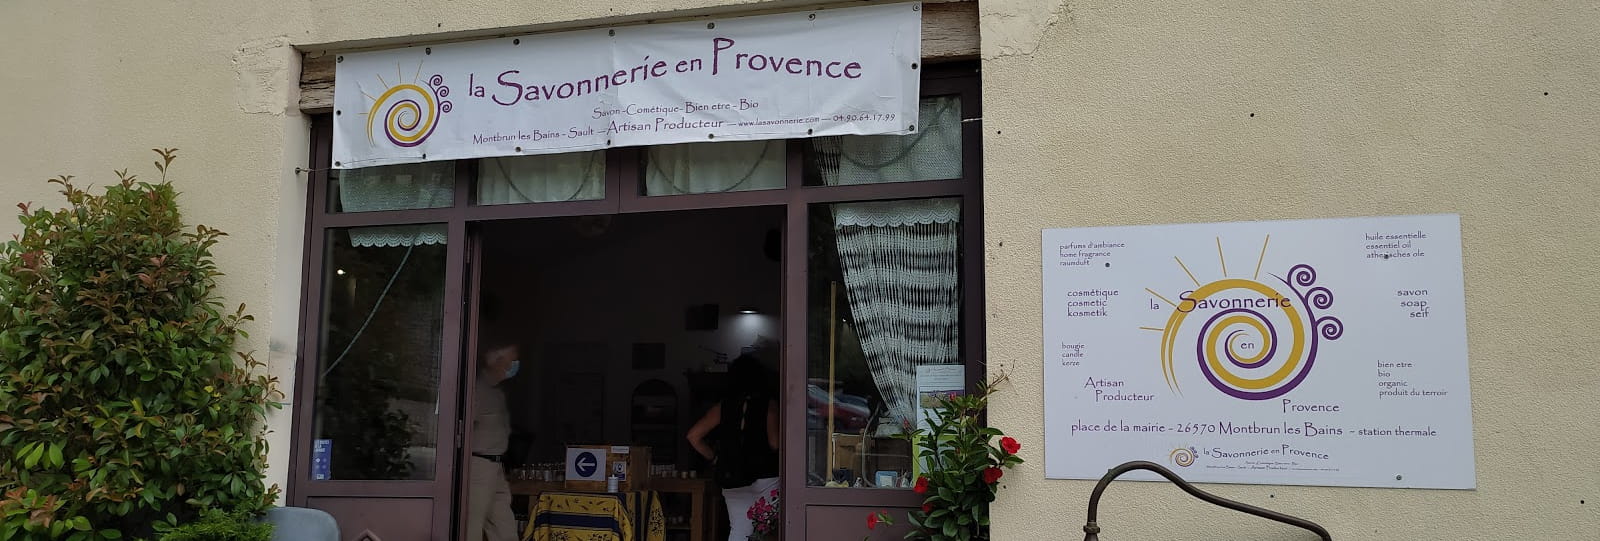 La Savonnerie en Provence